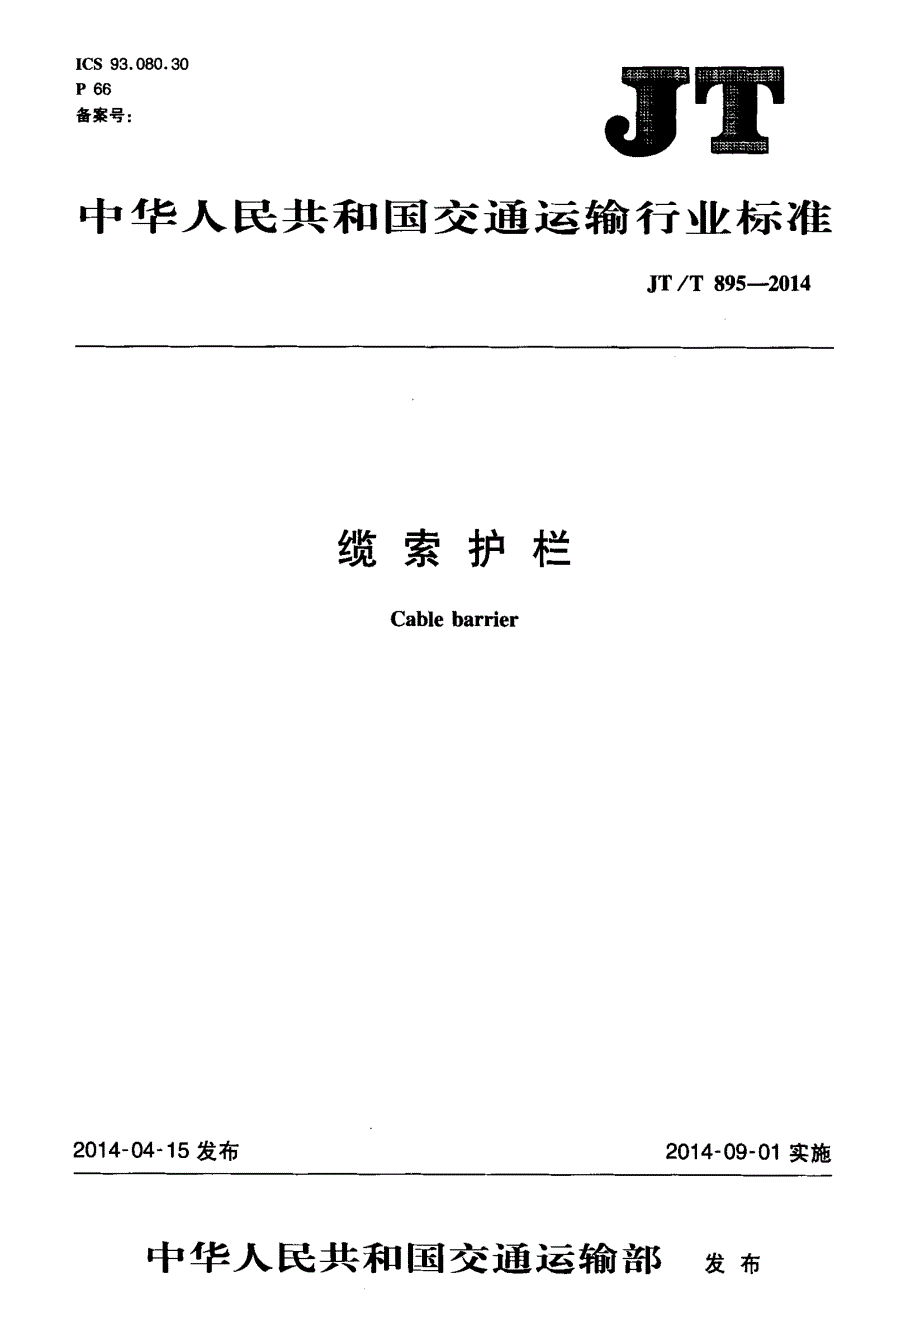 【交通路桥规范】JTT895-2014 缆索护栏_第1页